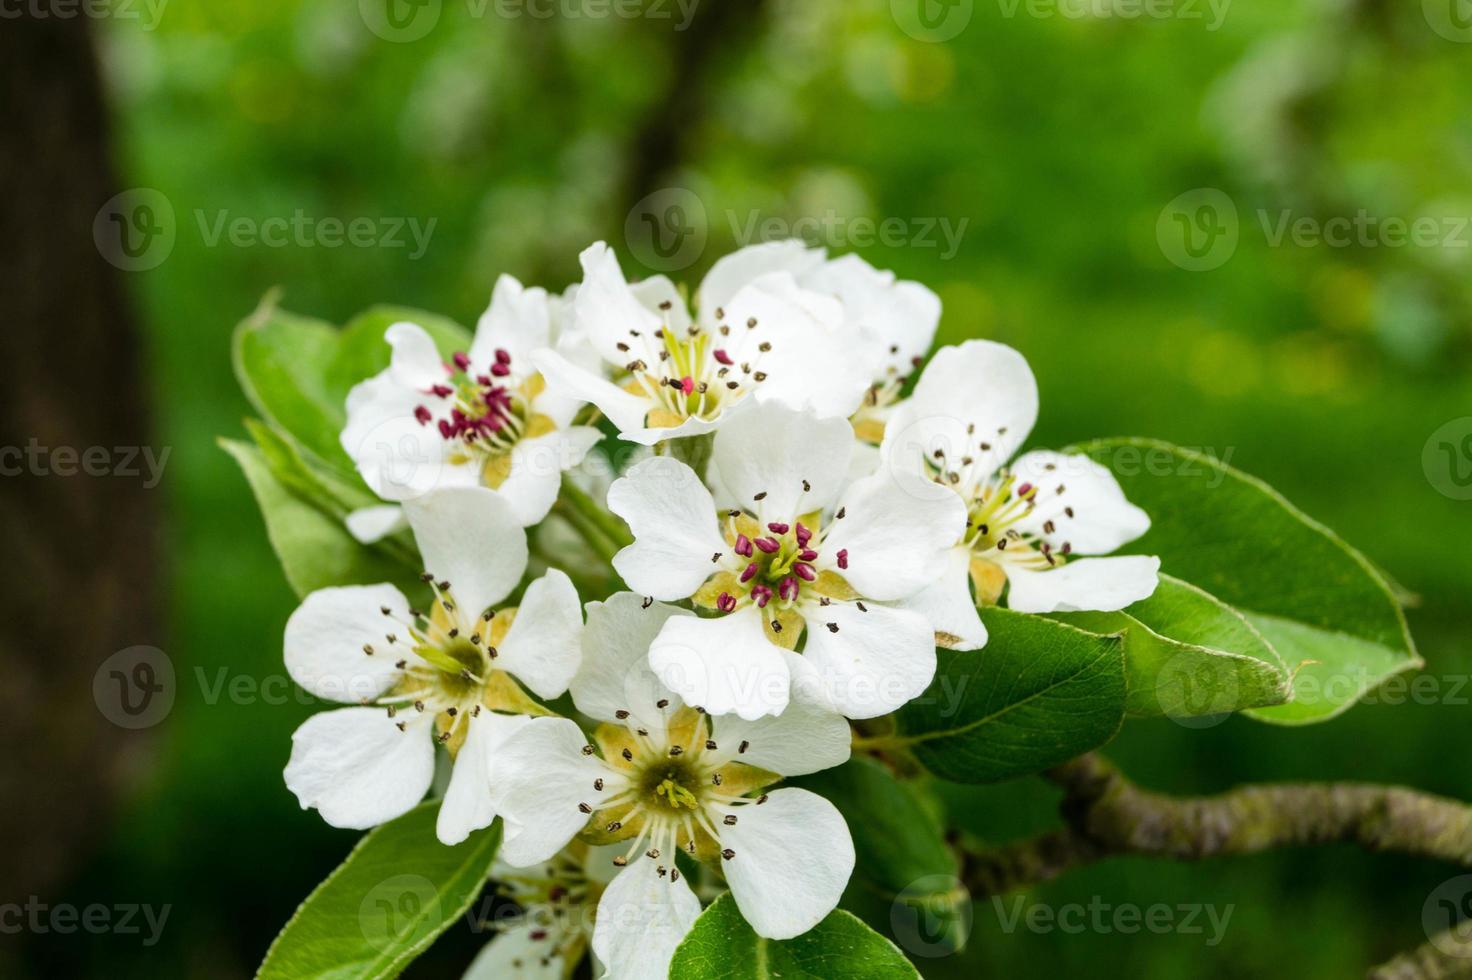 blommande fruktträd i det gamla landet nära hamburg tyskland foto